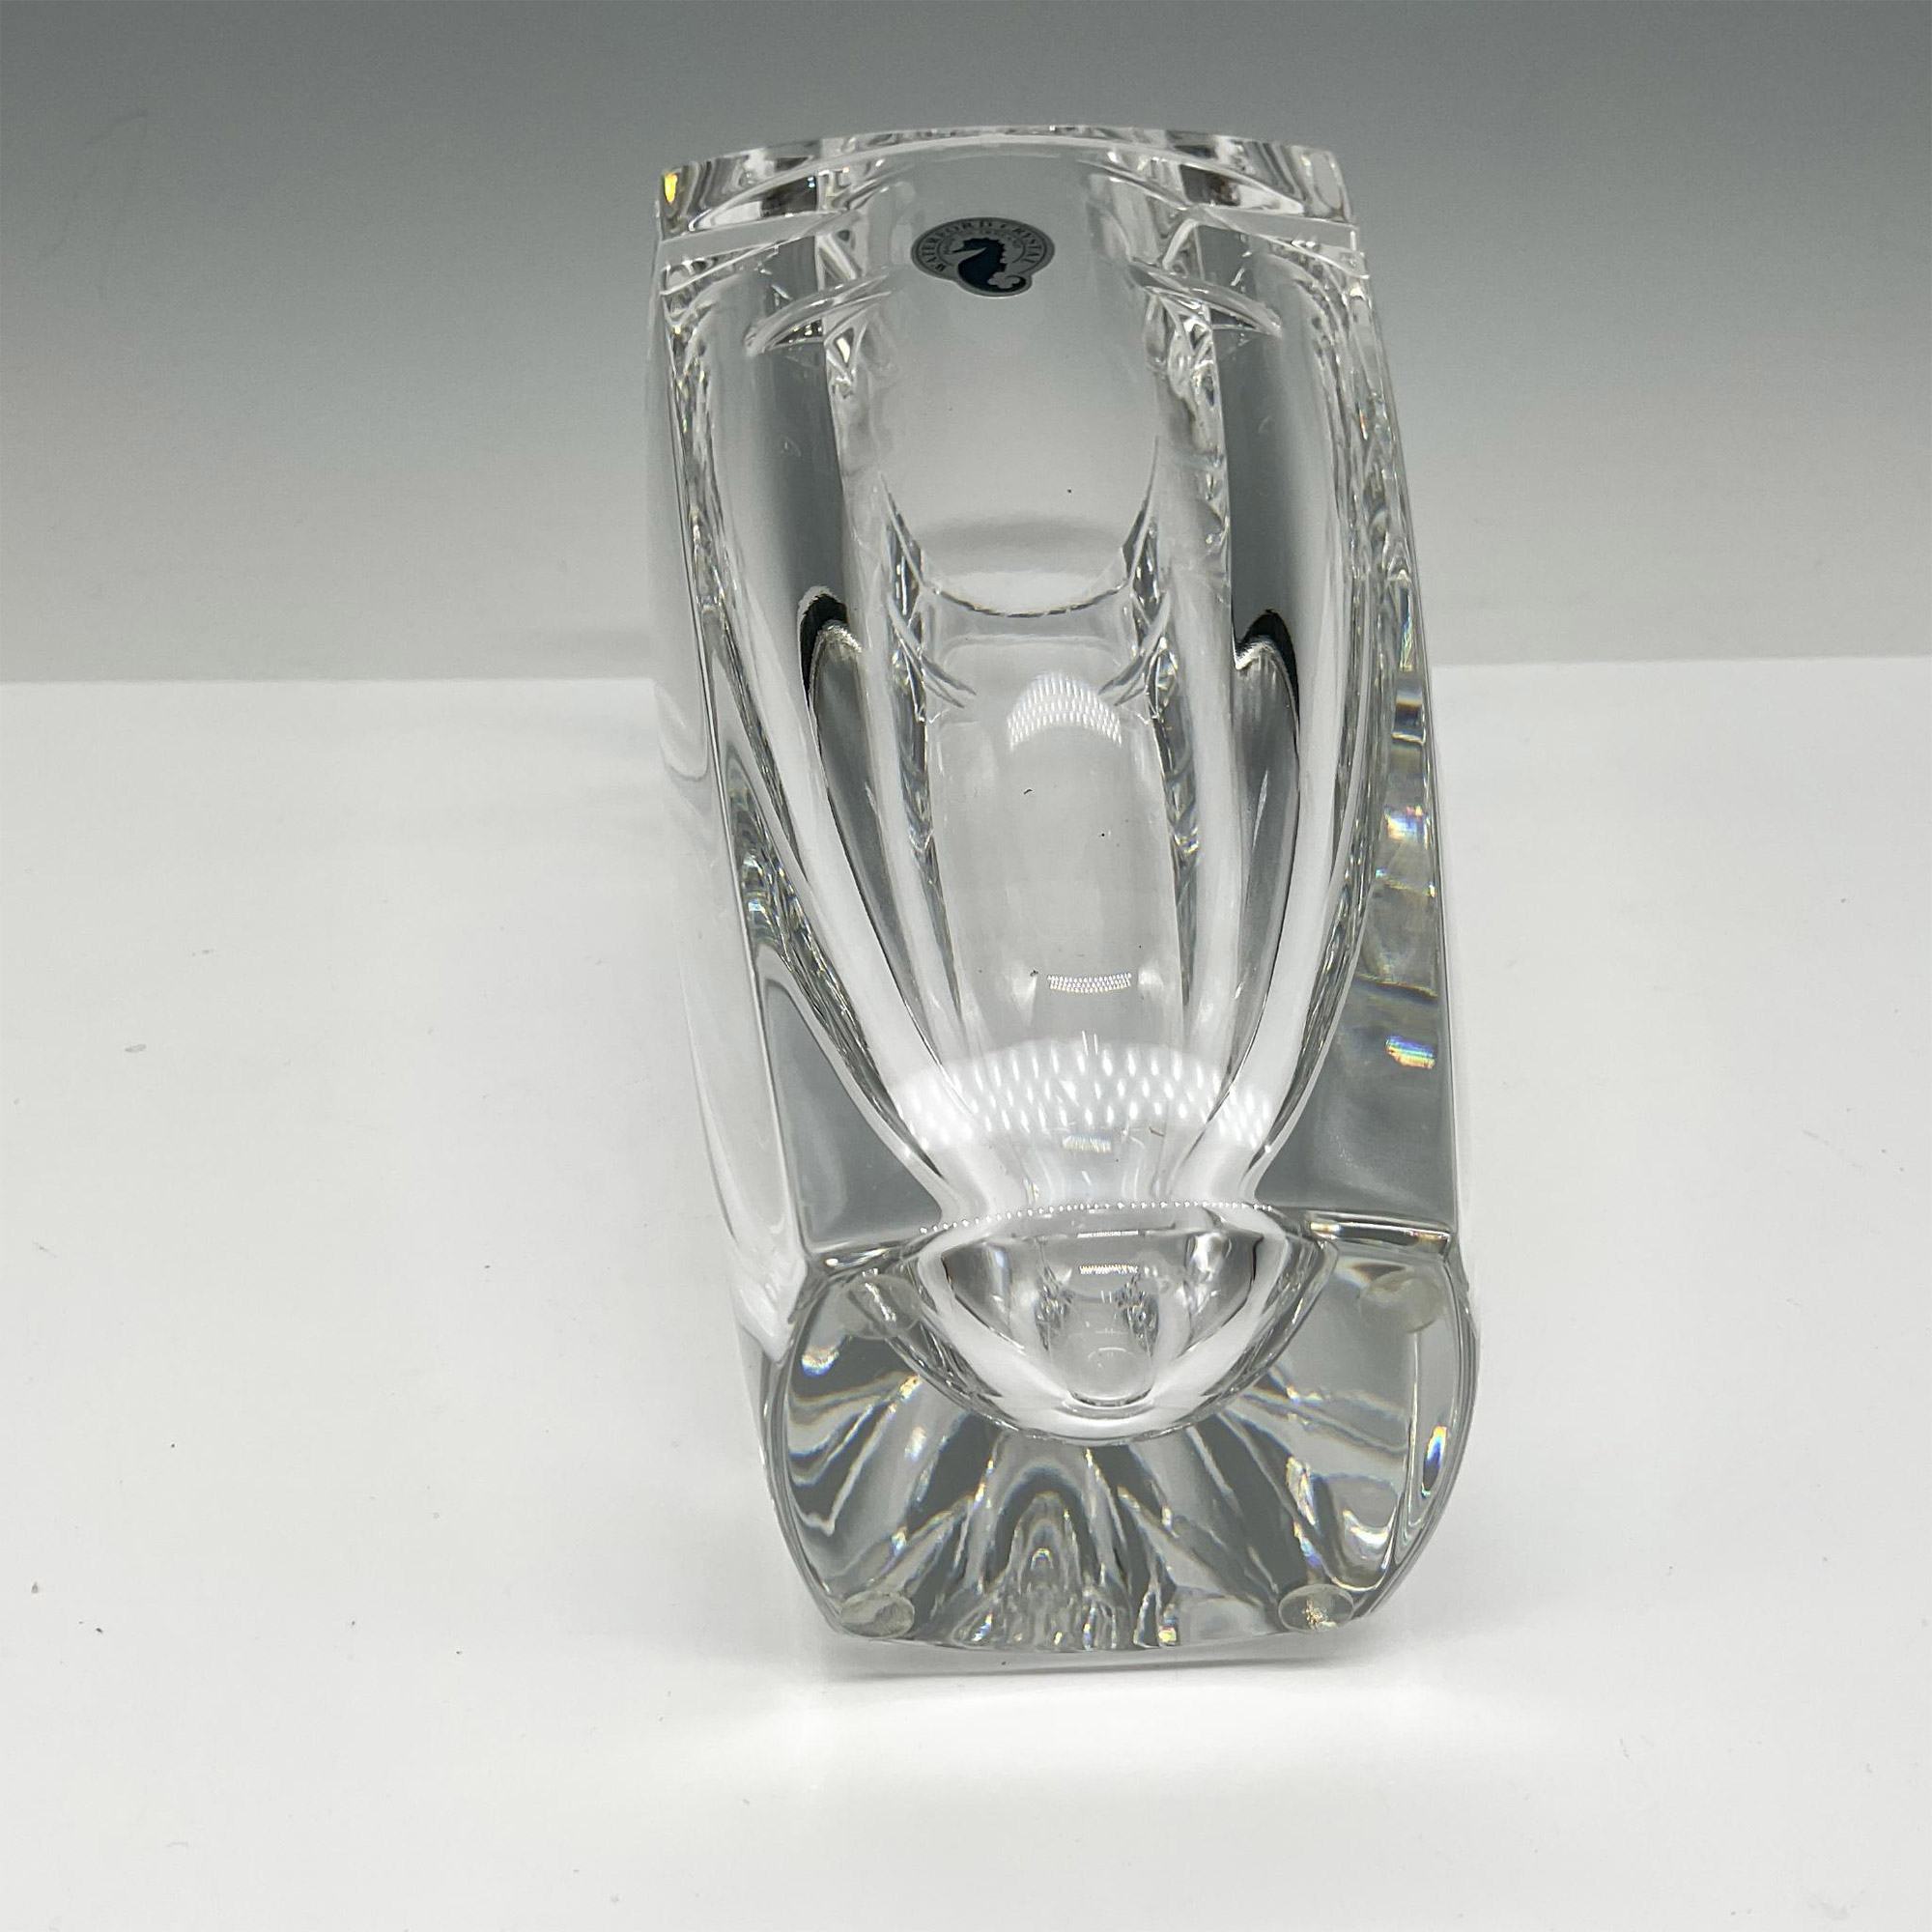 Waterford Crystal Metra Vase - Image 4 of 5